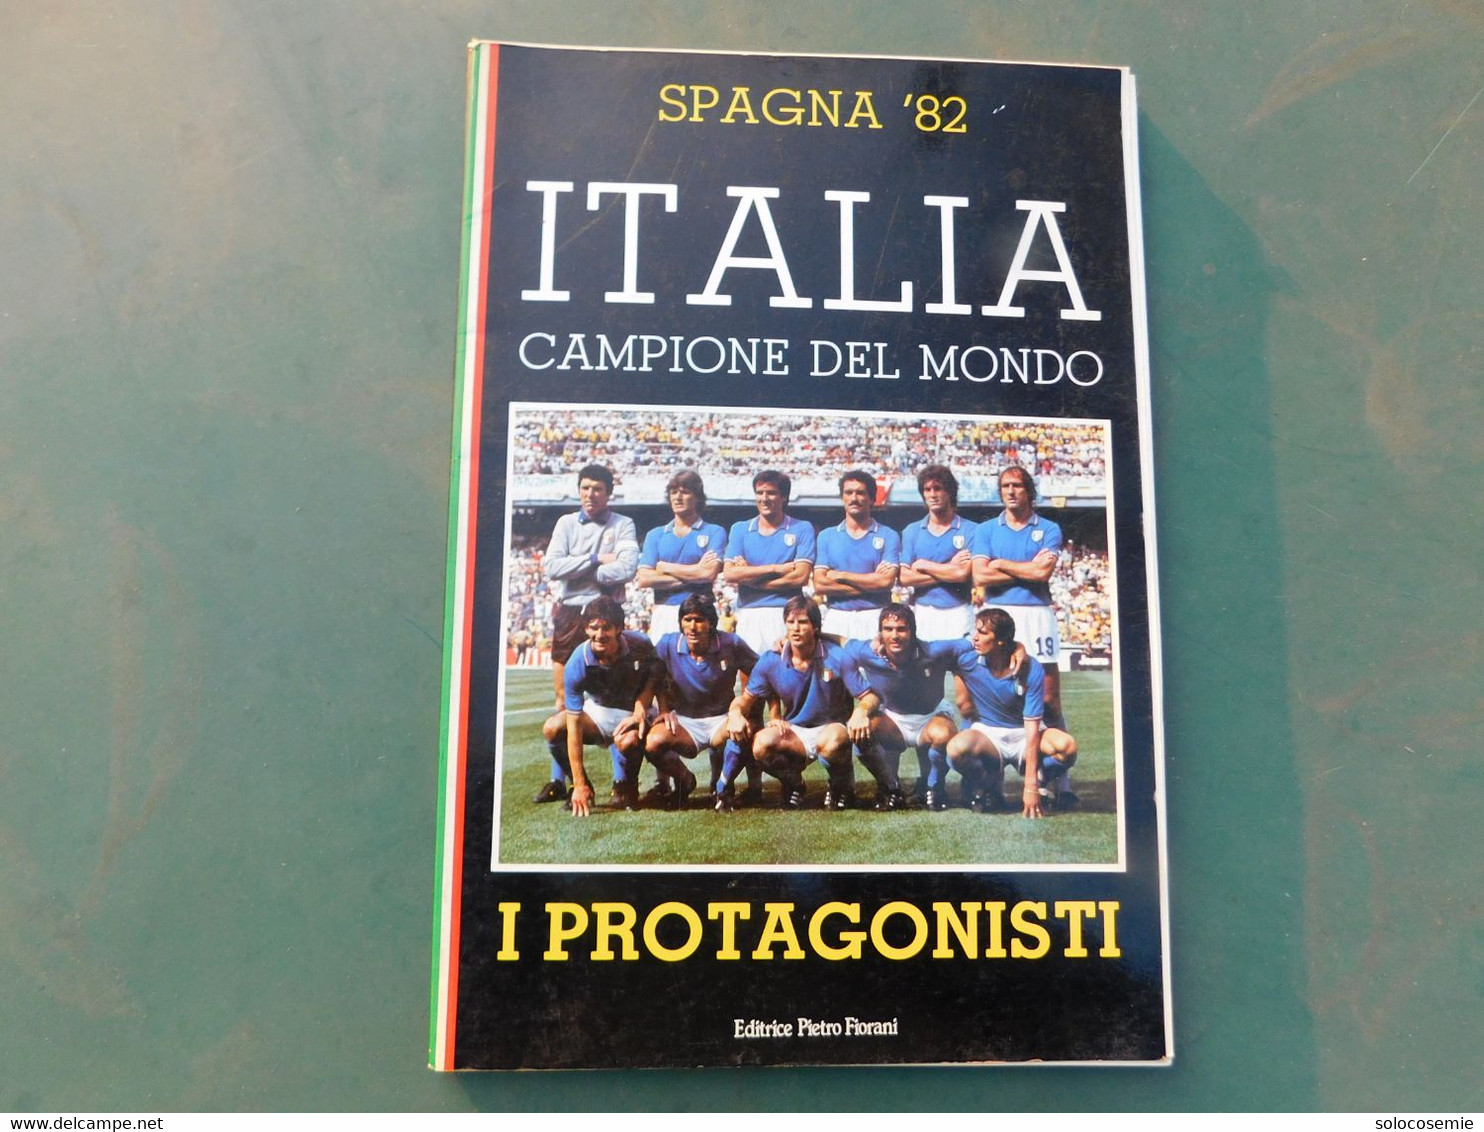 Spagna '82 - ITALIA CAMPIONE DEL MONDO  -I Protagonisti, Editrice Fiorani - Zu Identifizieren